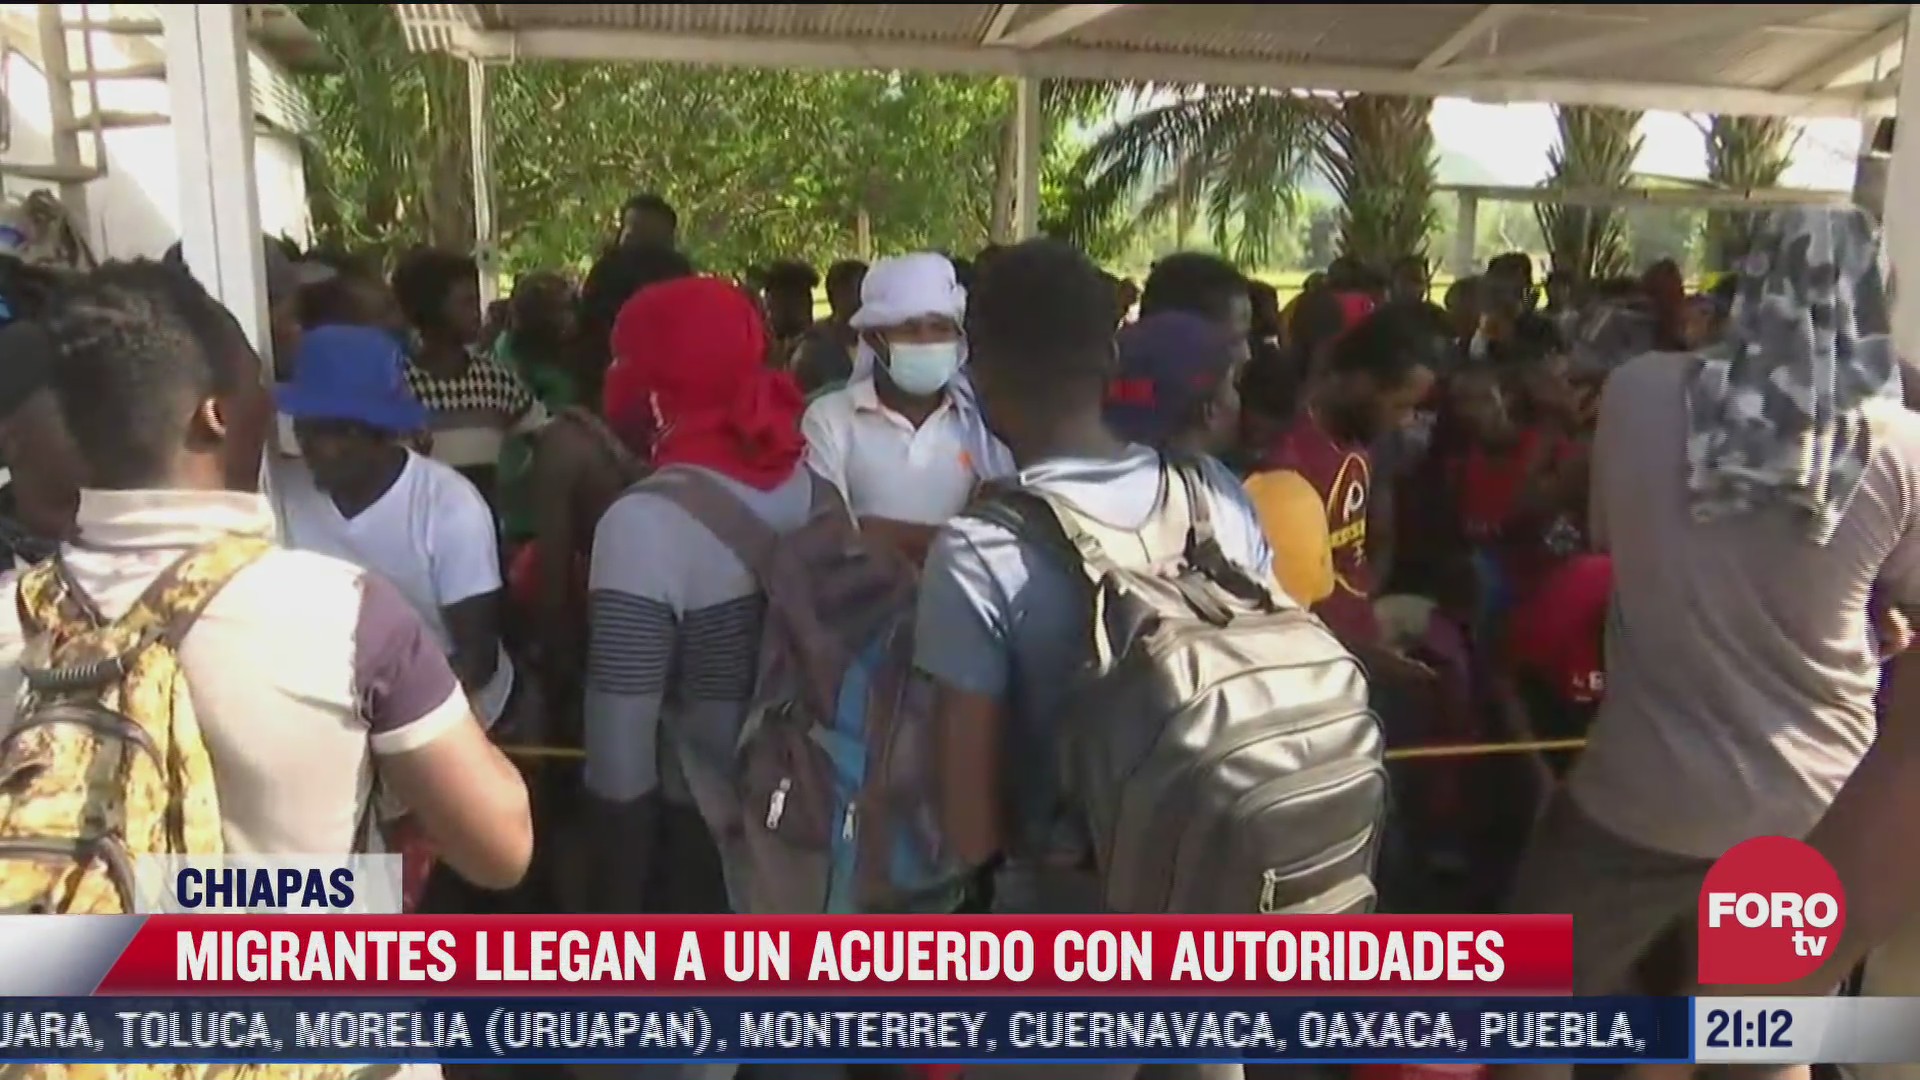 migrantes llegan a un acuerdo con autoridades en chiapas